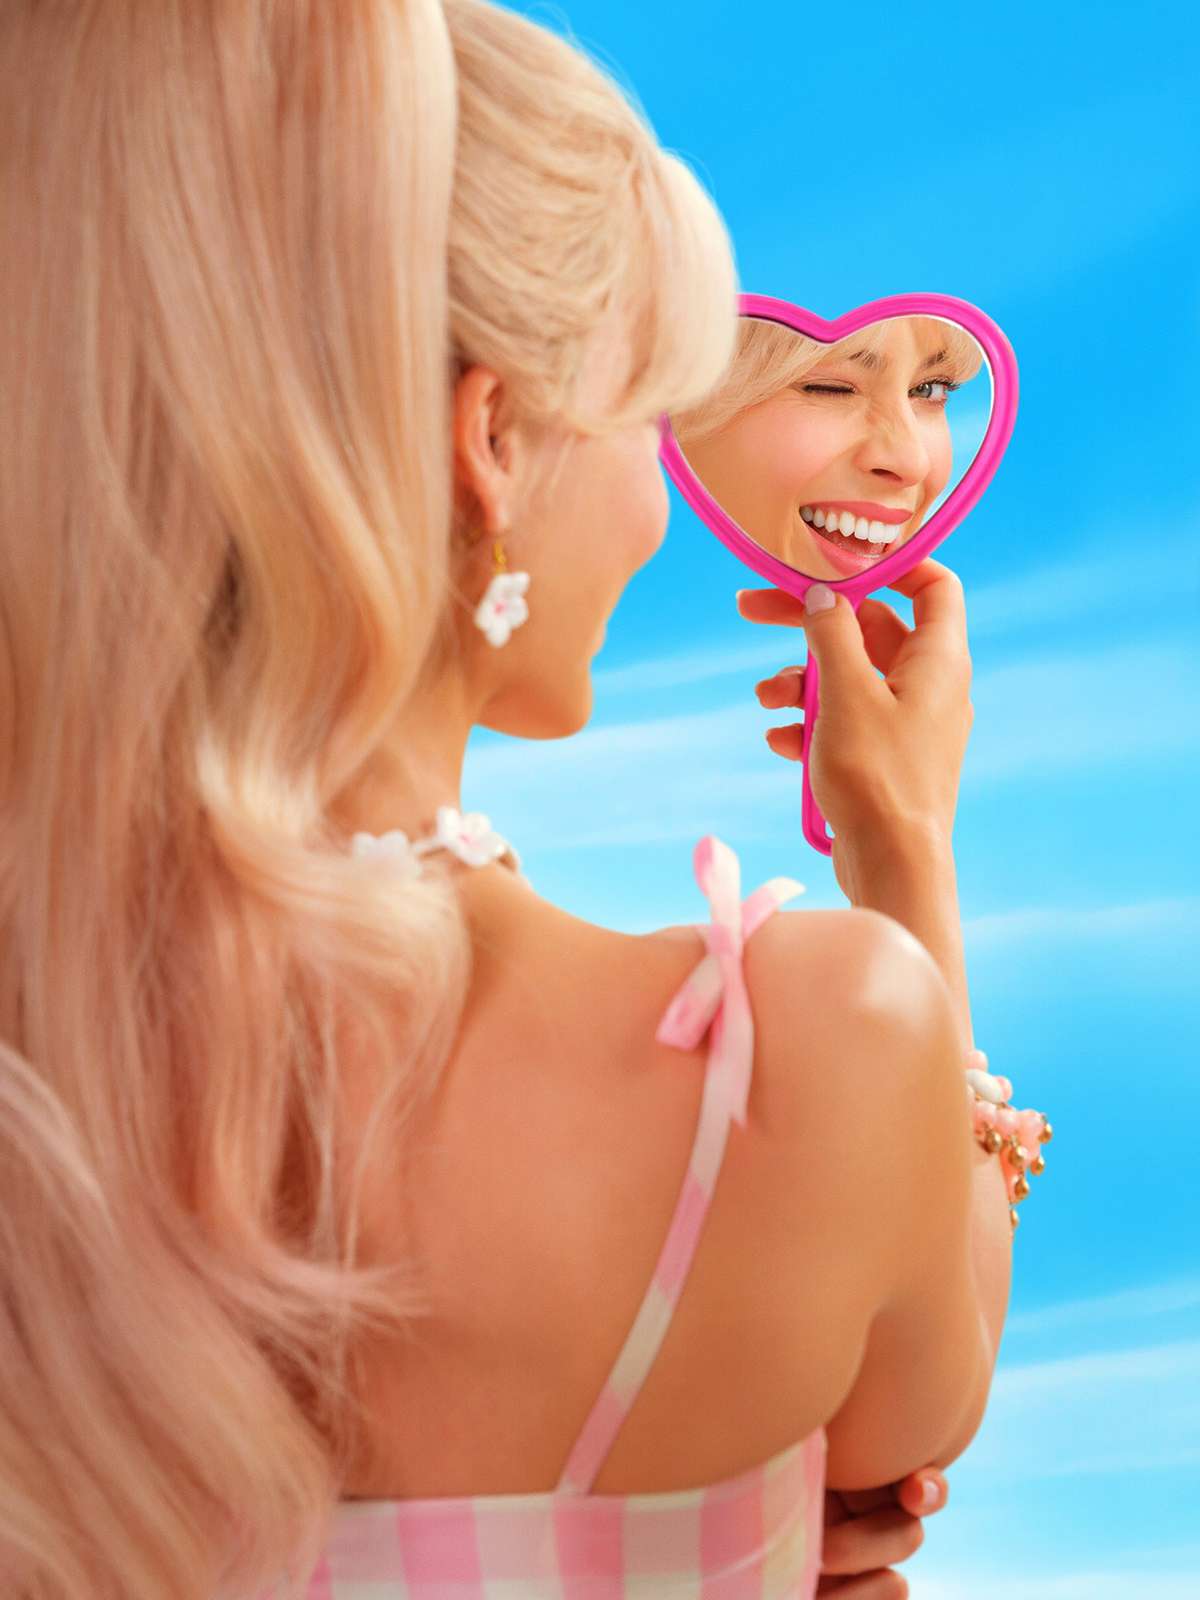 Barbie', 'Fuga das Galinhas 2' e outras produções chegam ao streaming